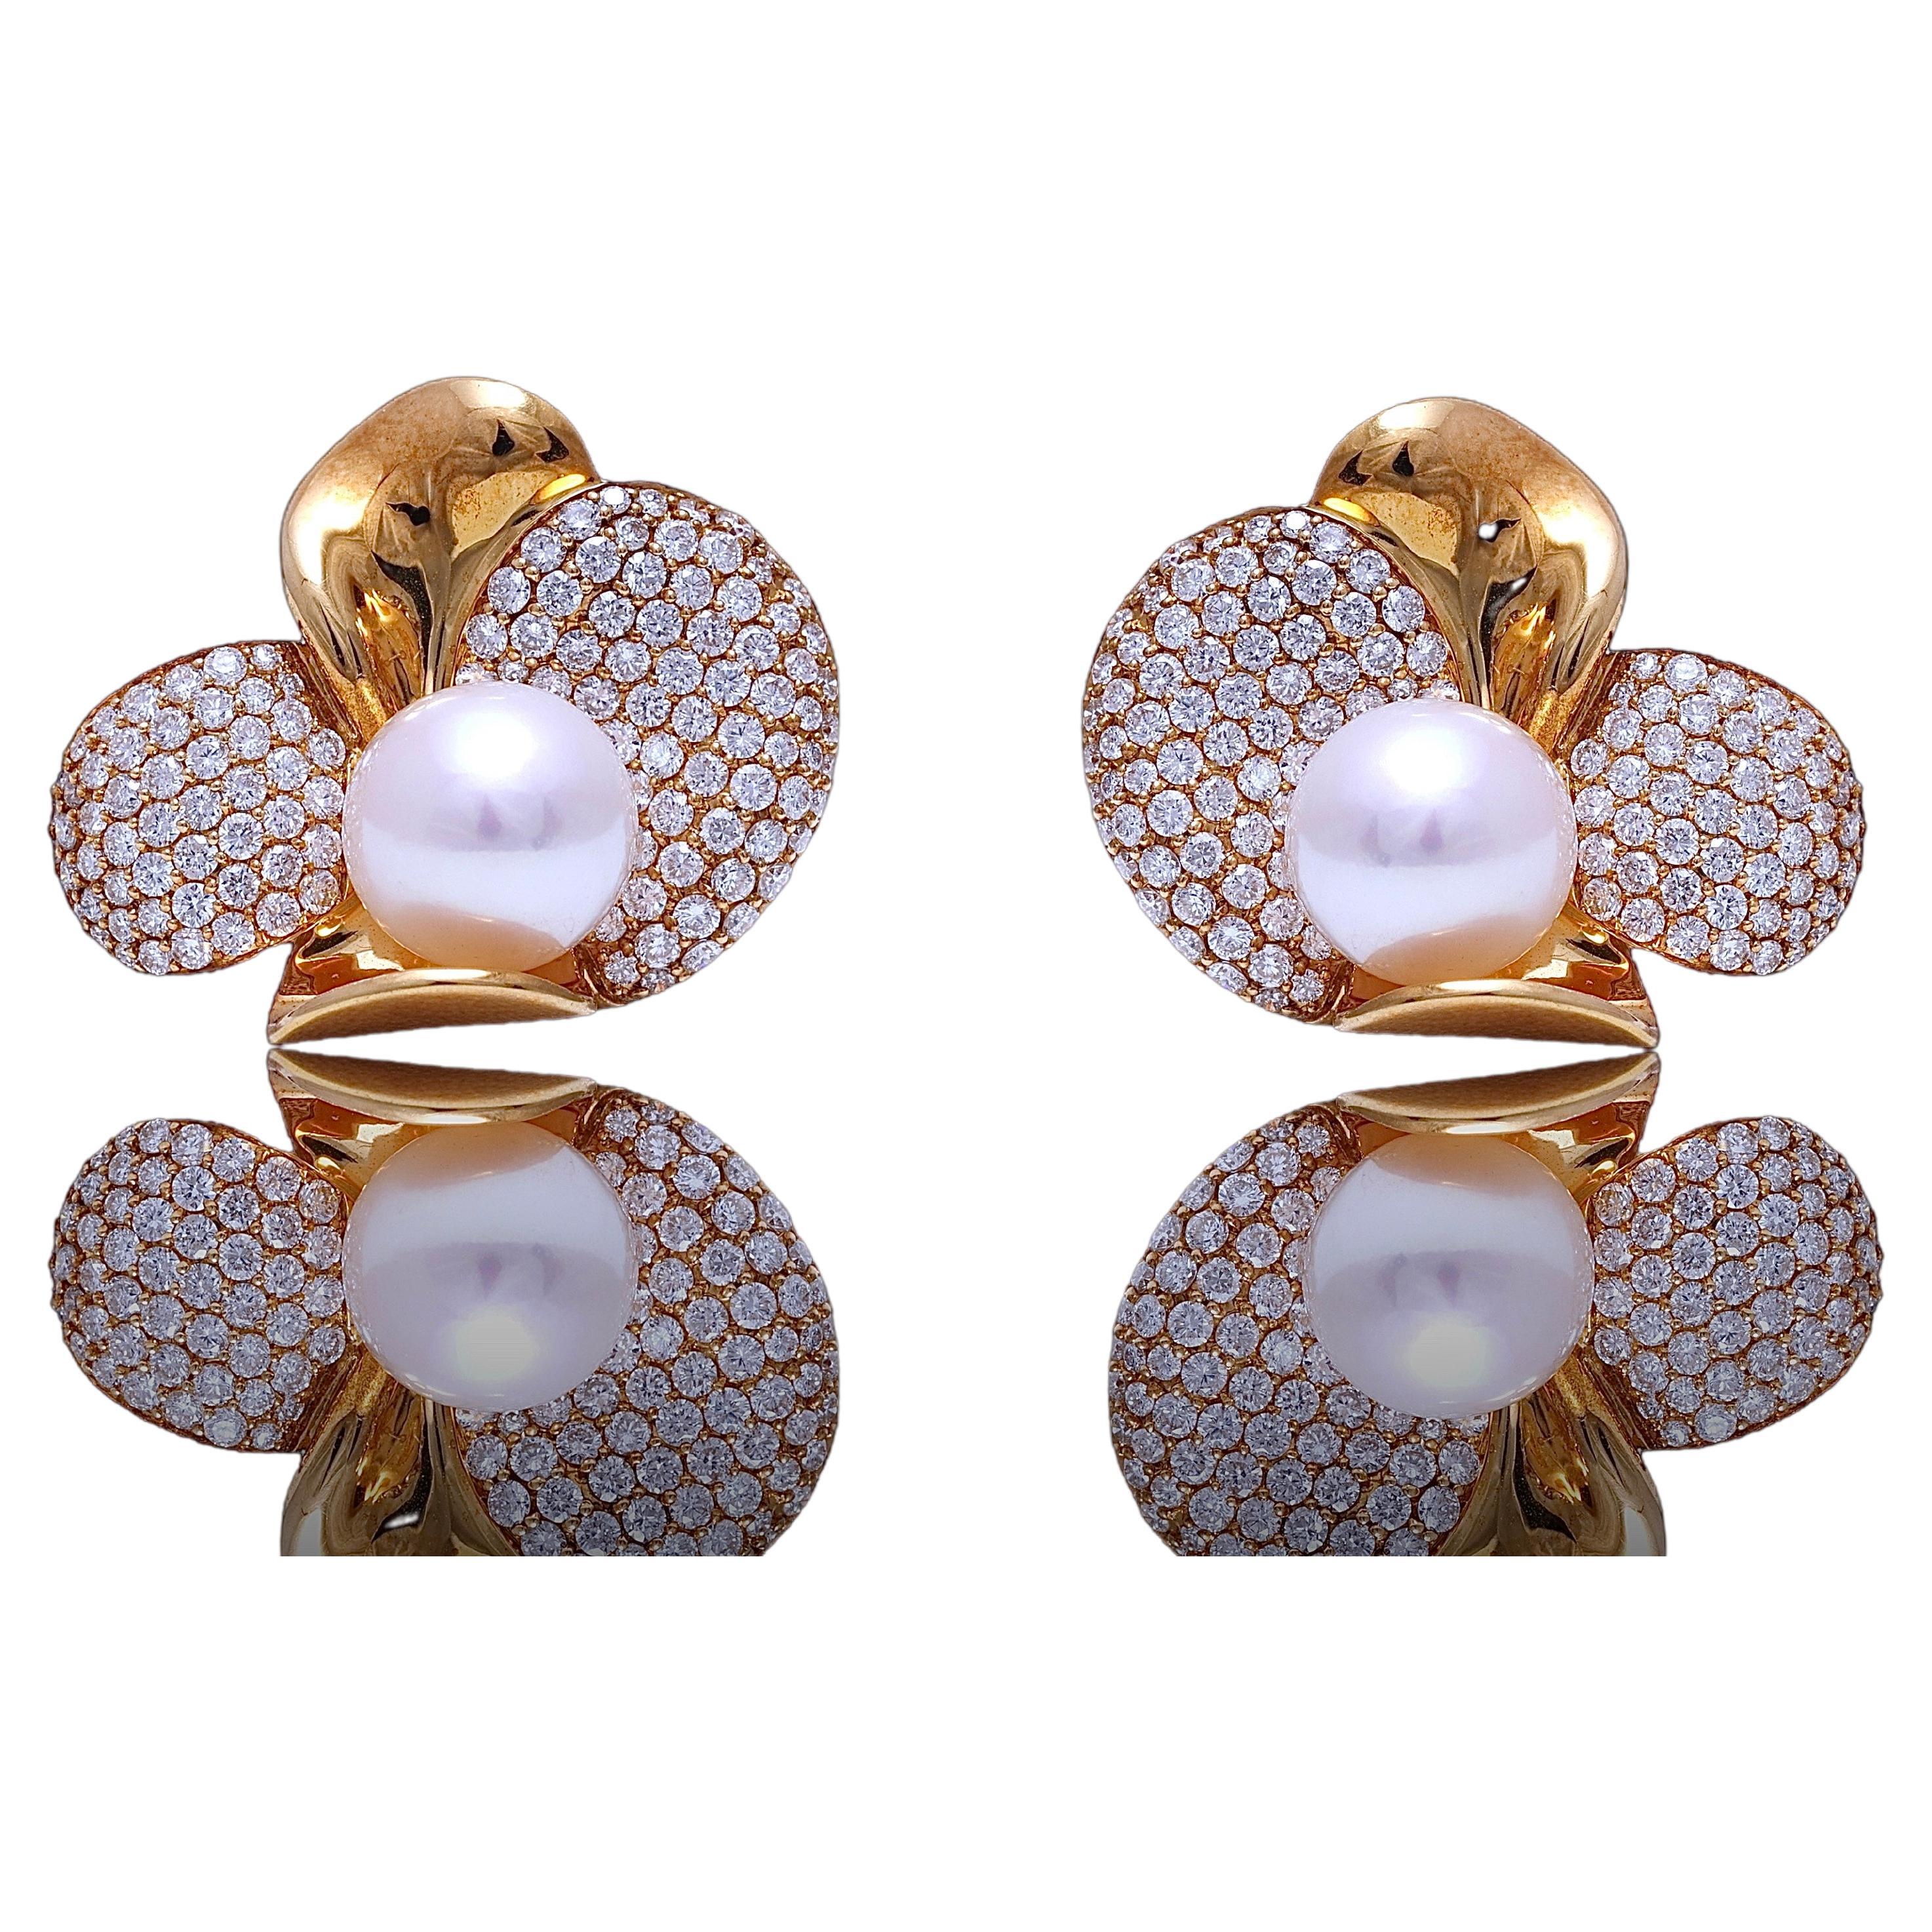 Boucles d'oreilles à clip en or jaune 18 carats avec diamants et perle d'Akoya

Diamants : 2.2 Ct Top Quality 
Perles : Akoya 8.5 mm ,beau lustre

Dimensions : 22,5 mm x 25,2 mm x 15,9 mm

Poids total : 16,1 grammes 0,565oz 10,3dwt